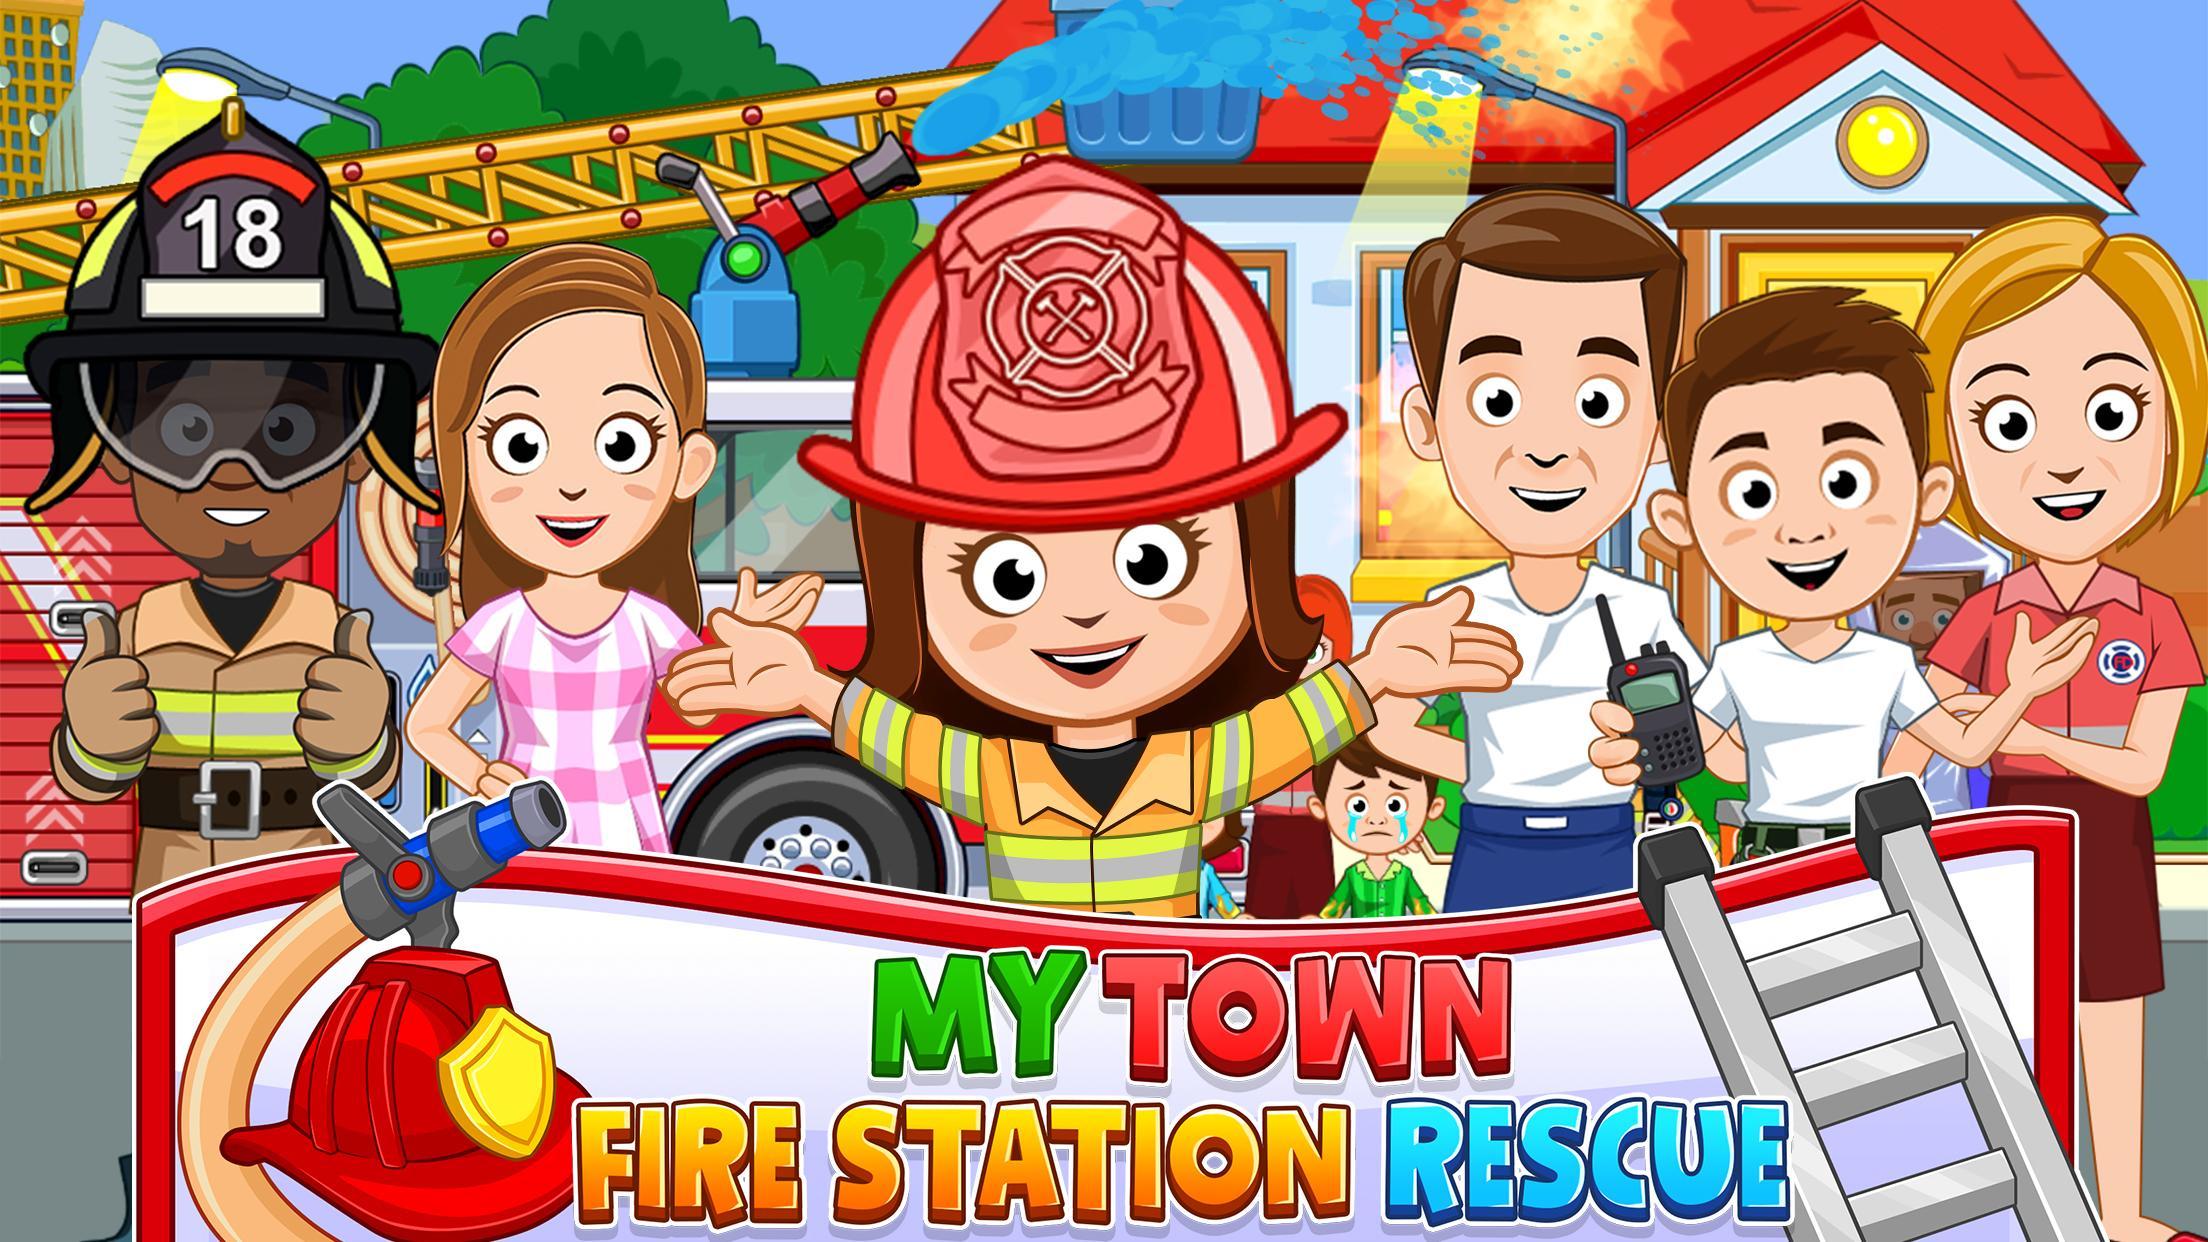 Screenshot 1 of Trò chơi Lính cứu hỏa: Xe cứu hỏa 7.00.11